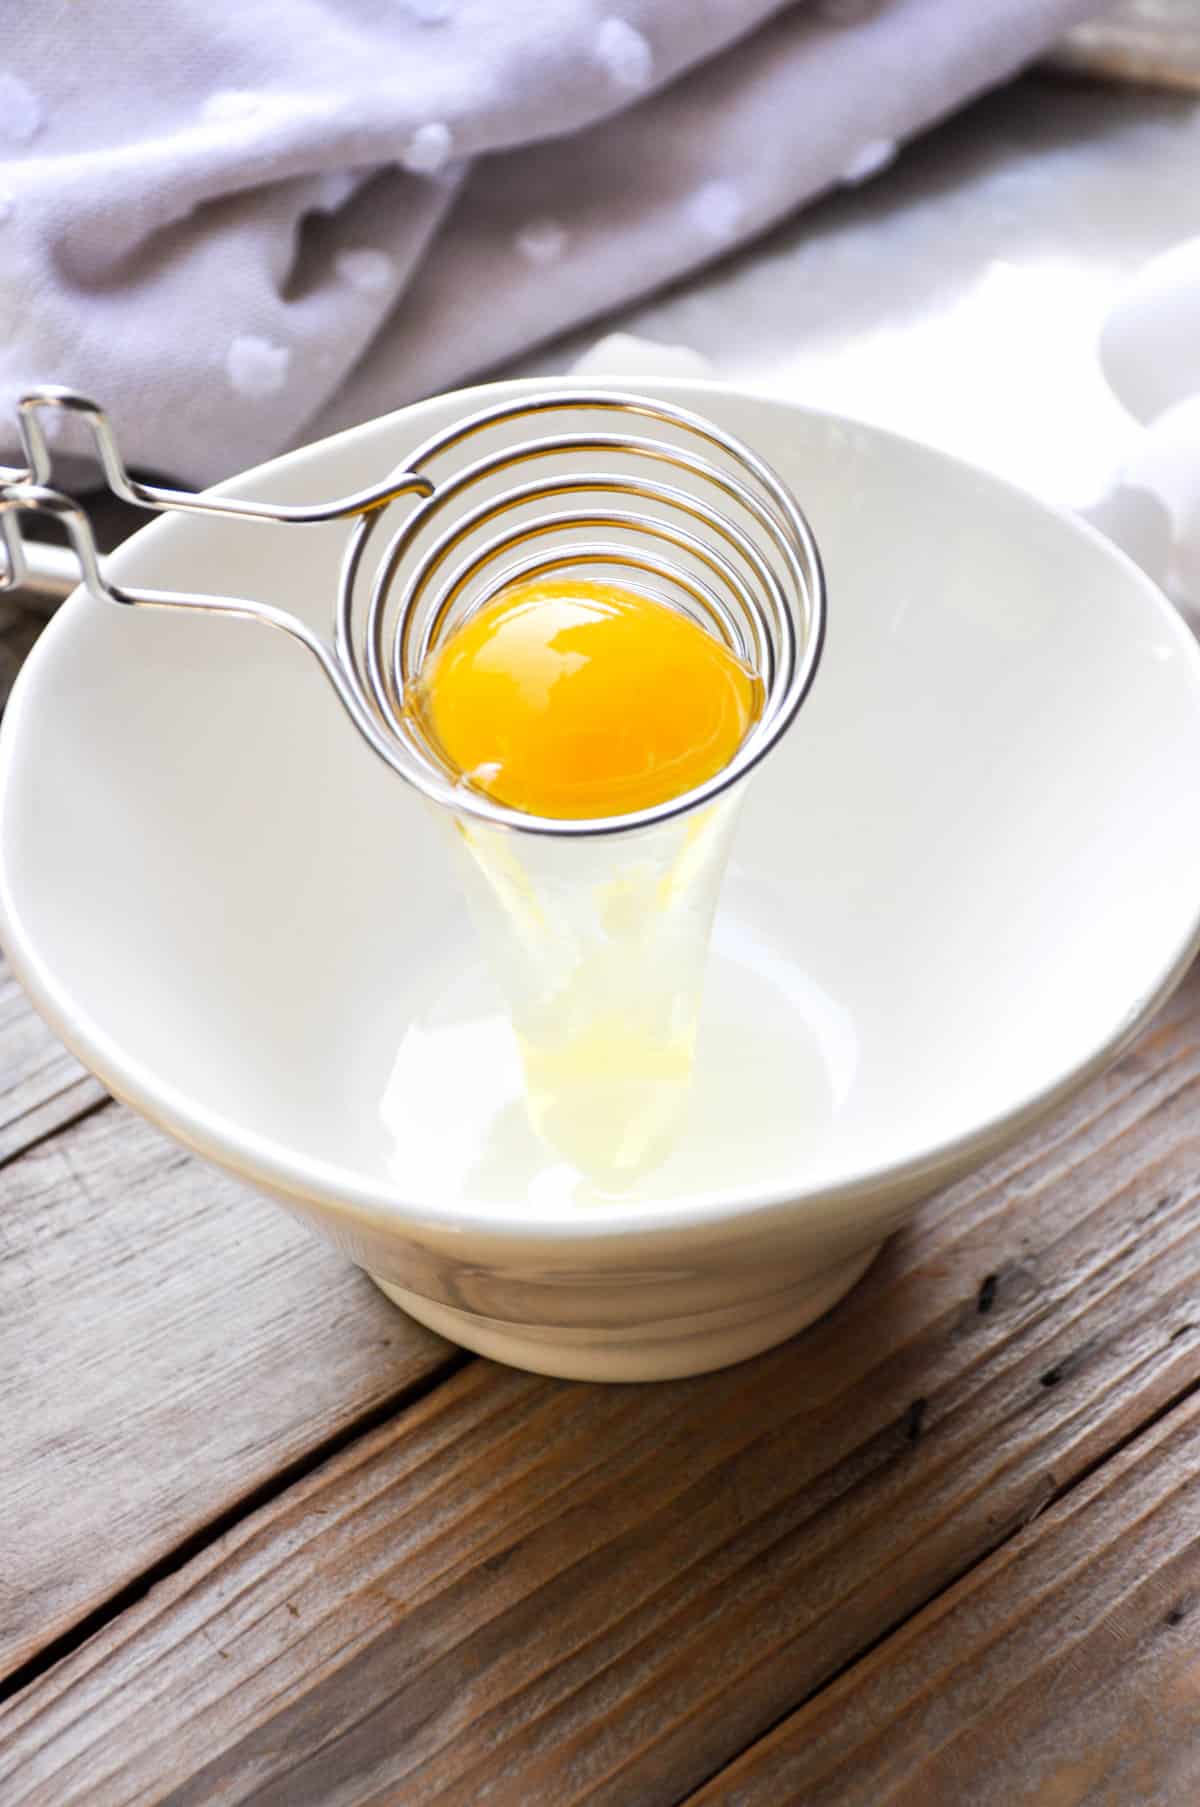 Separate egg white from yoke 